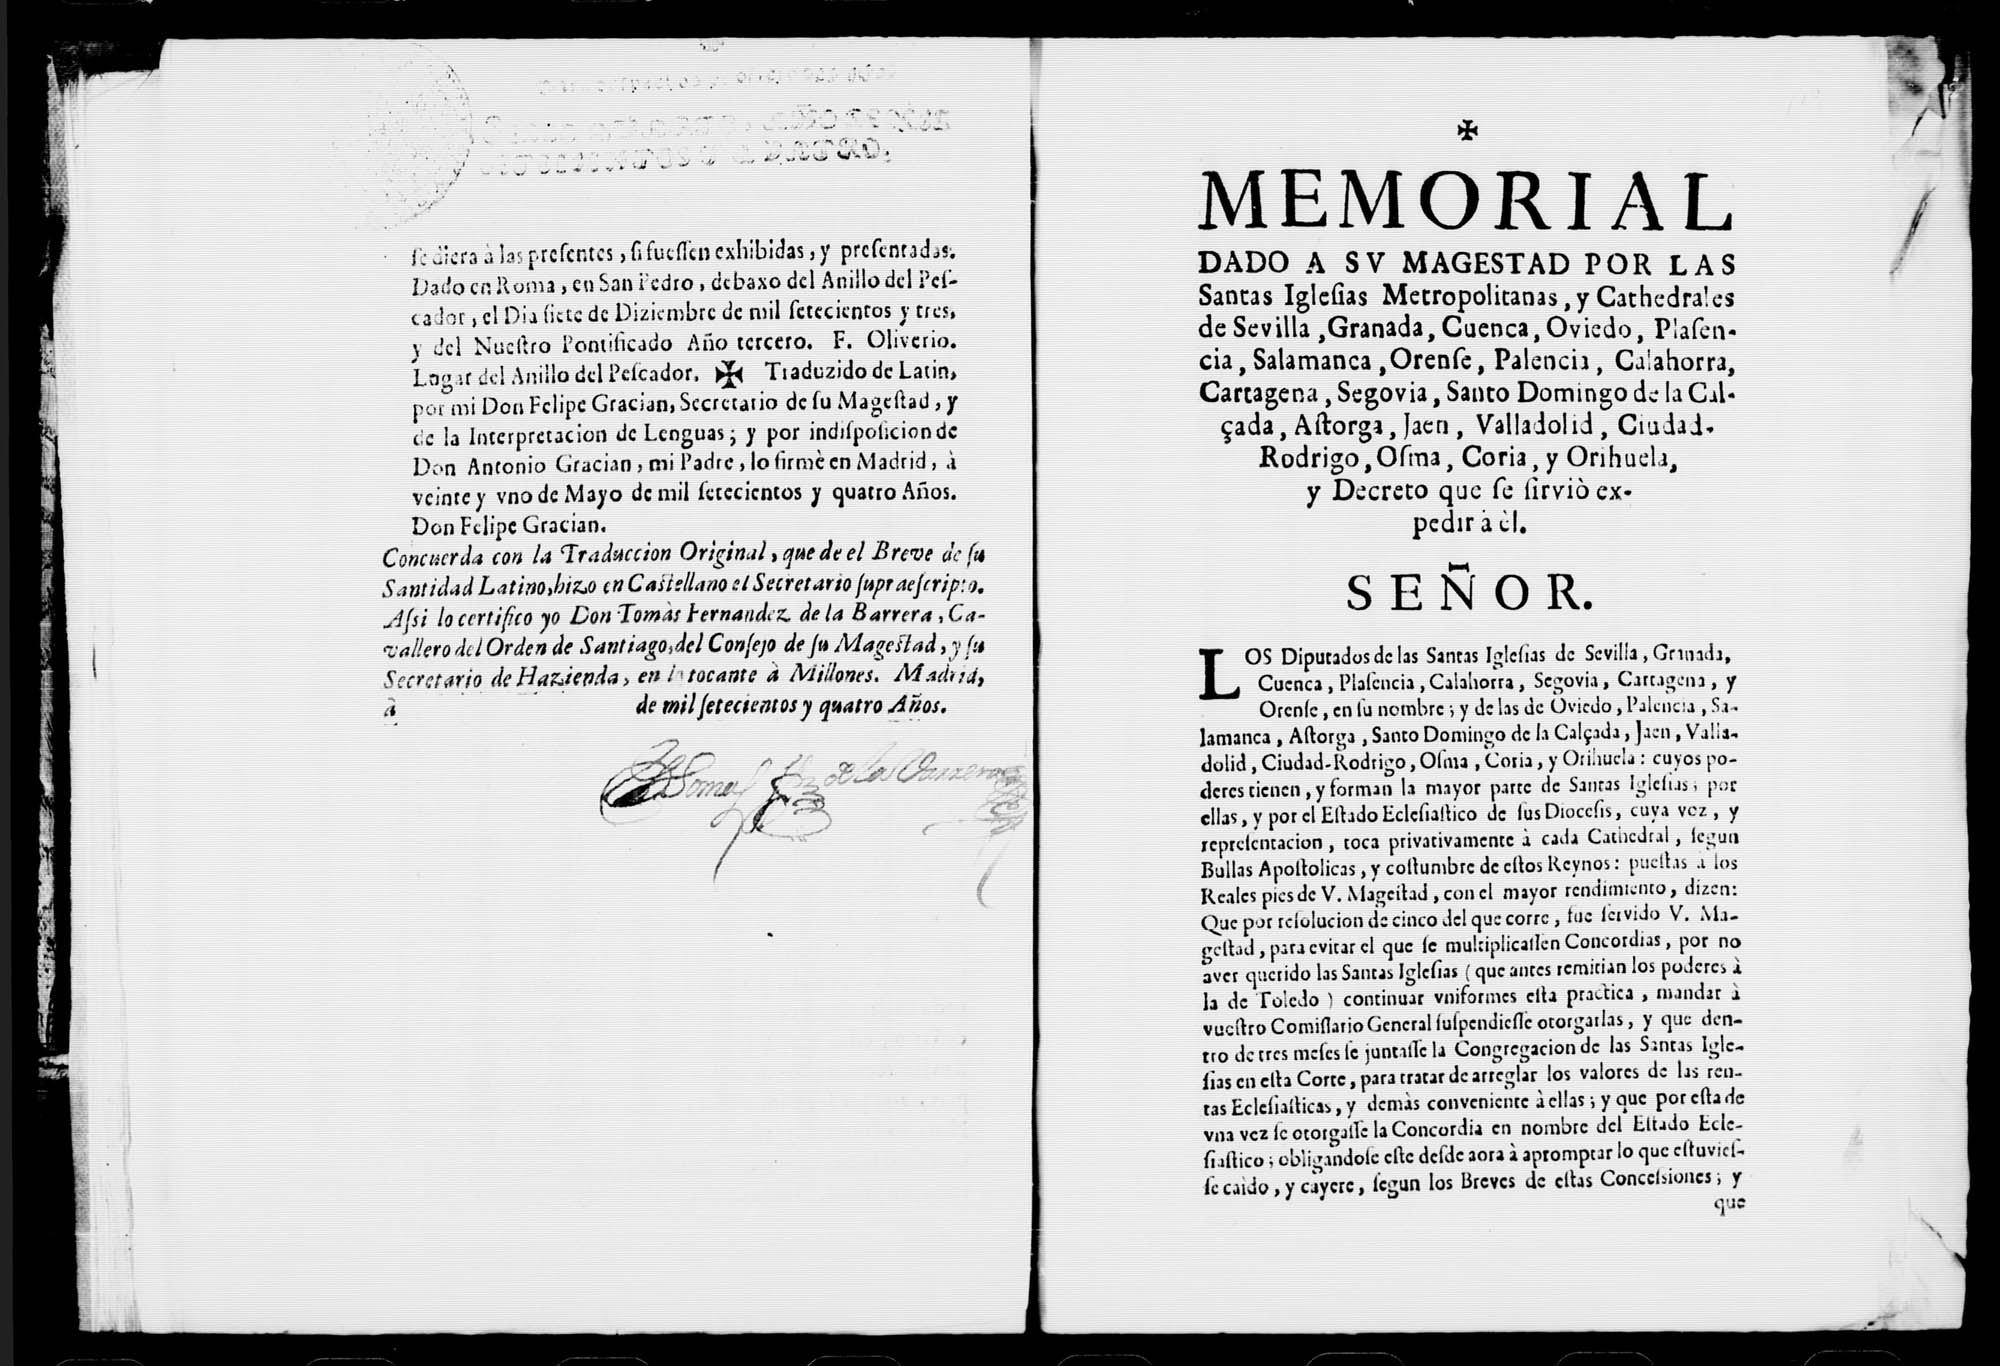 Memorial dado a Su Majestad por las Santas Iglesias Metropolitanas y Catedrales de Cartagena, Orihuela y otras, y decreto que se sirvió expedir a él.